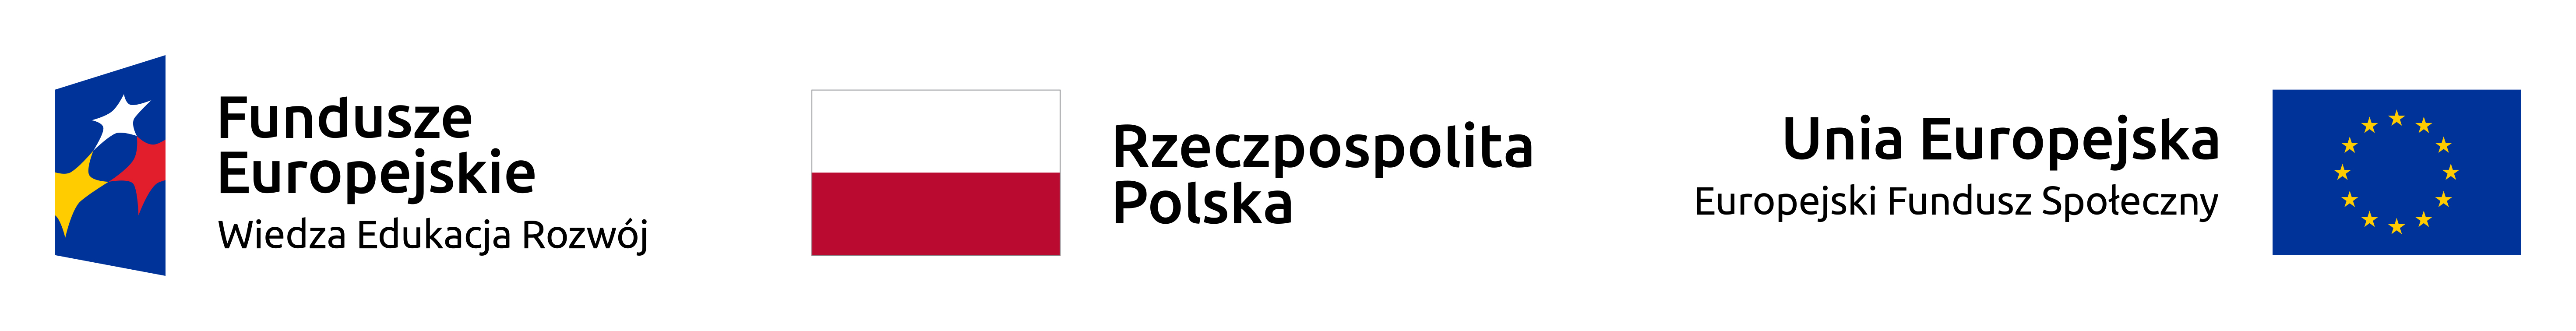 Nagłówek z flagą Polski